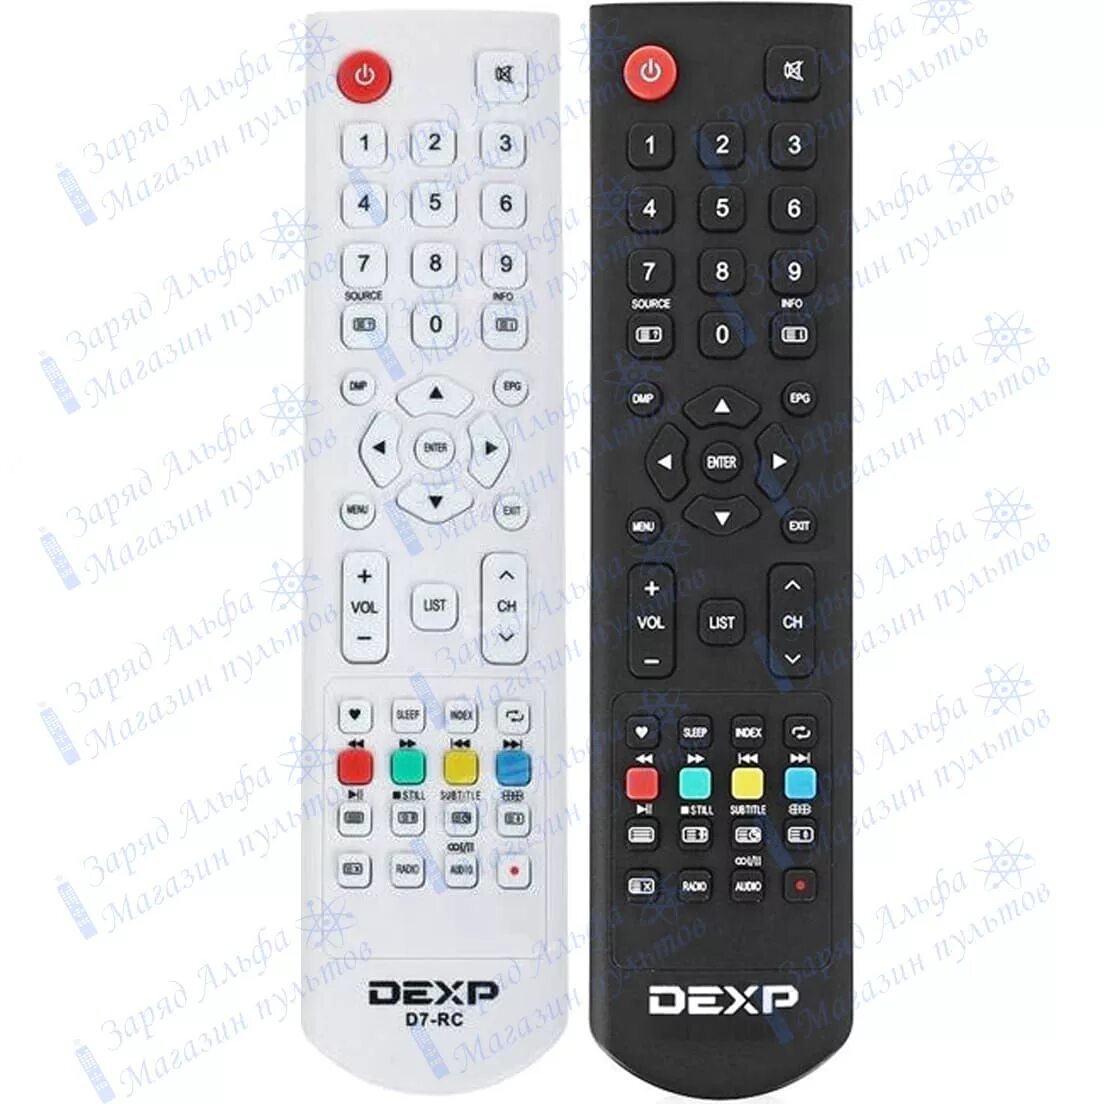 Пульт для телевизора DEXP d7-RC. Пульт DEXP f32d7200. Пульт для DEXP 32a7000. H32f7100c пульт для телевизора DEXP. Пульт дексп купить